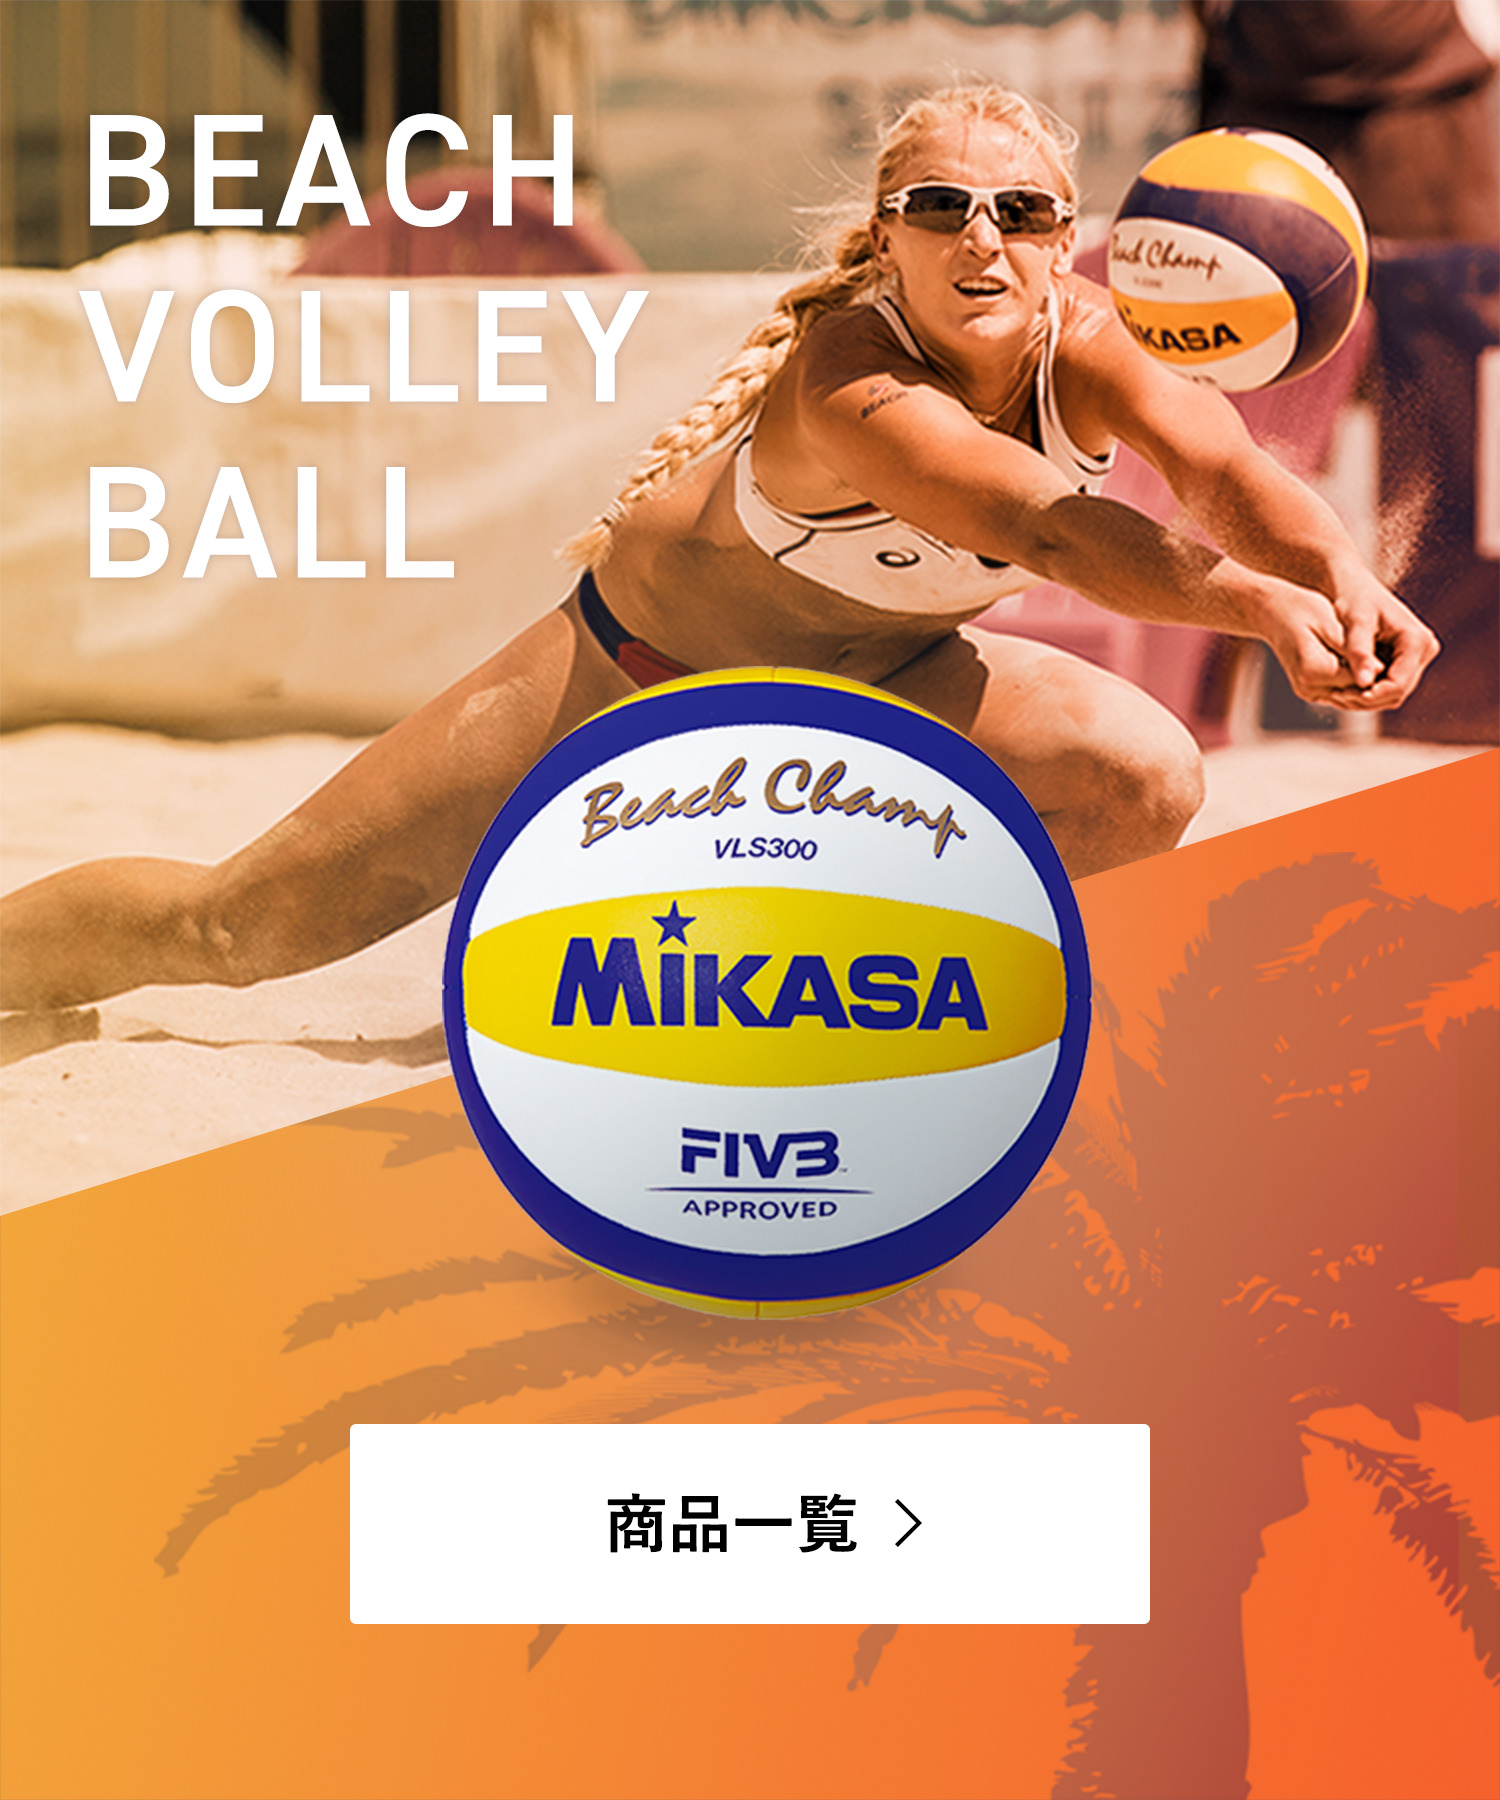 株式会社ミカサ Mikasa ボール スポーツ用品 コーポレートサイト